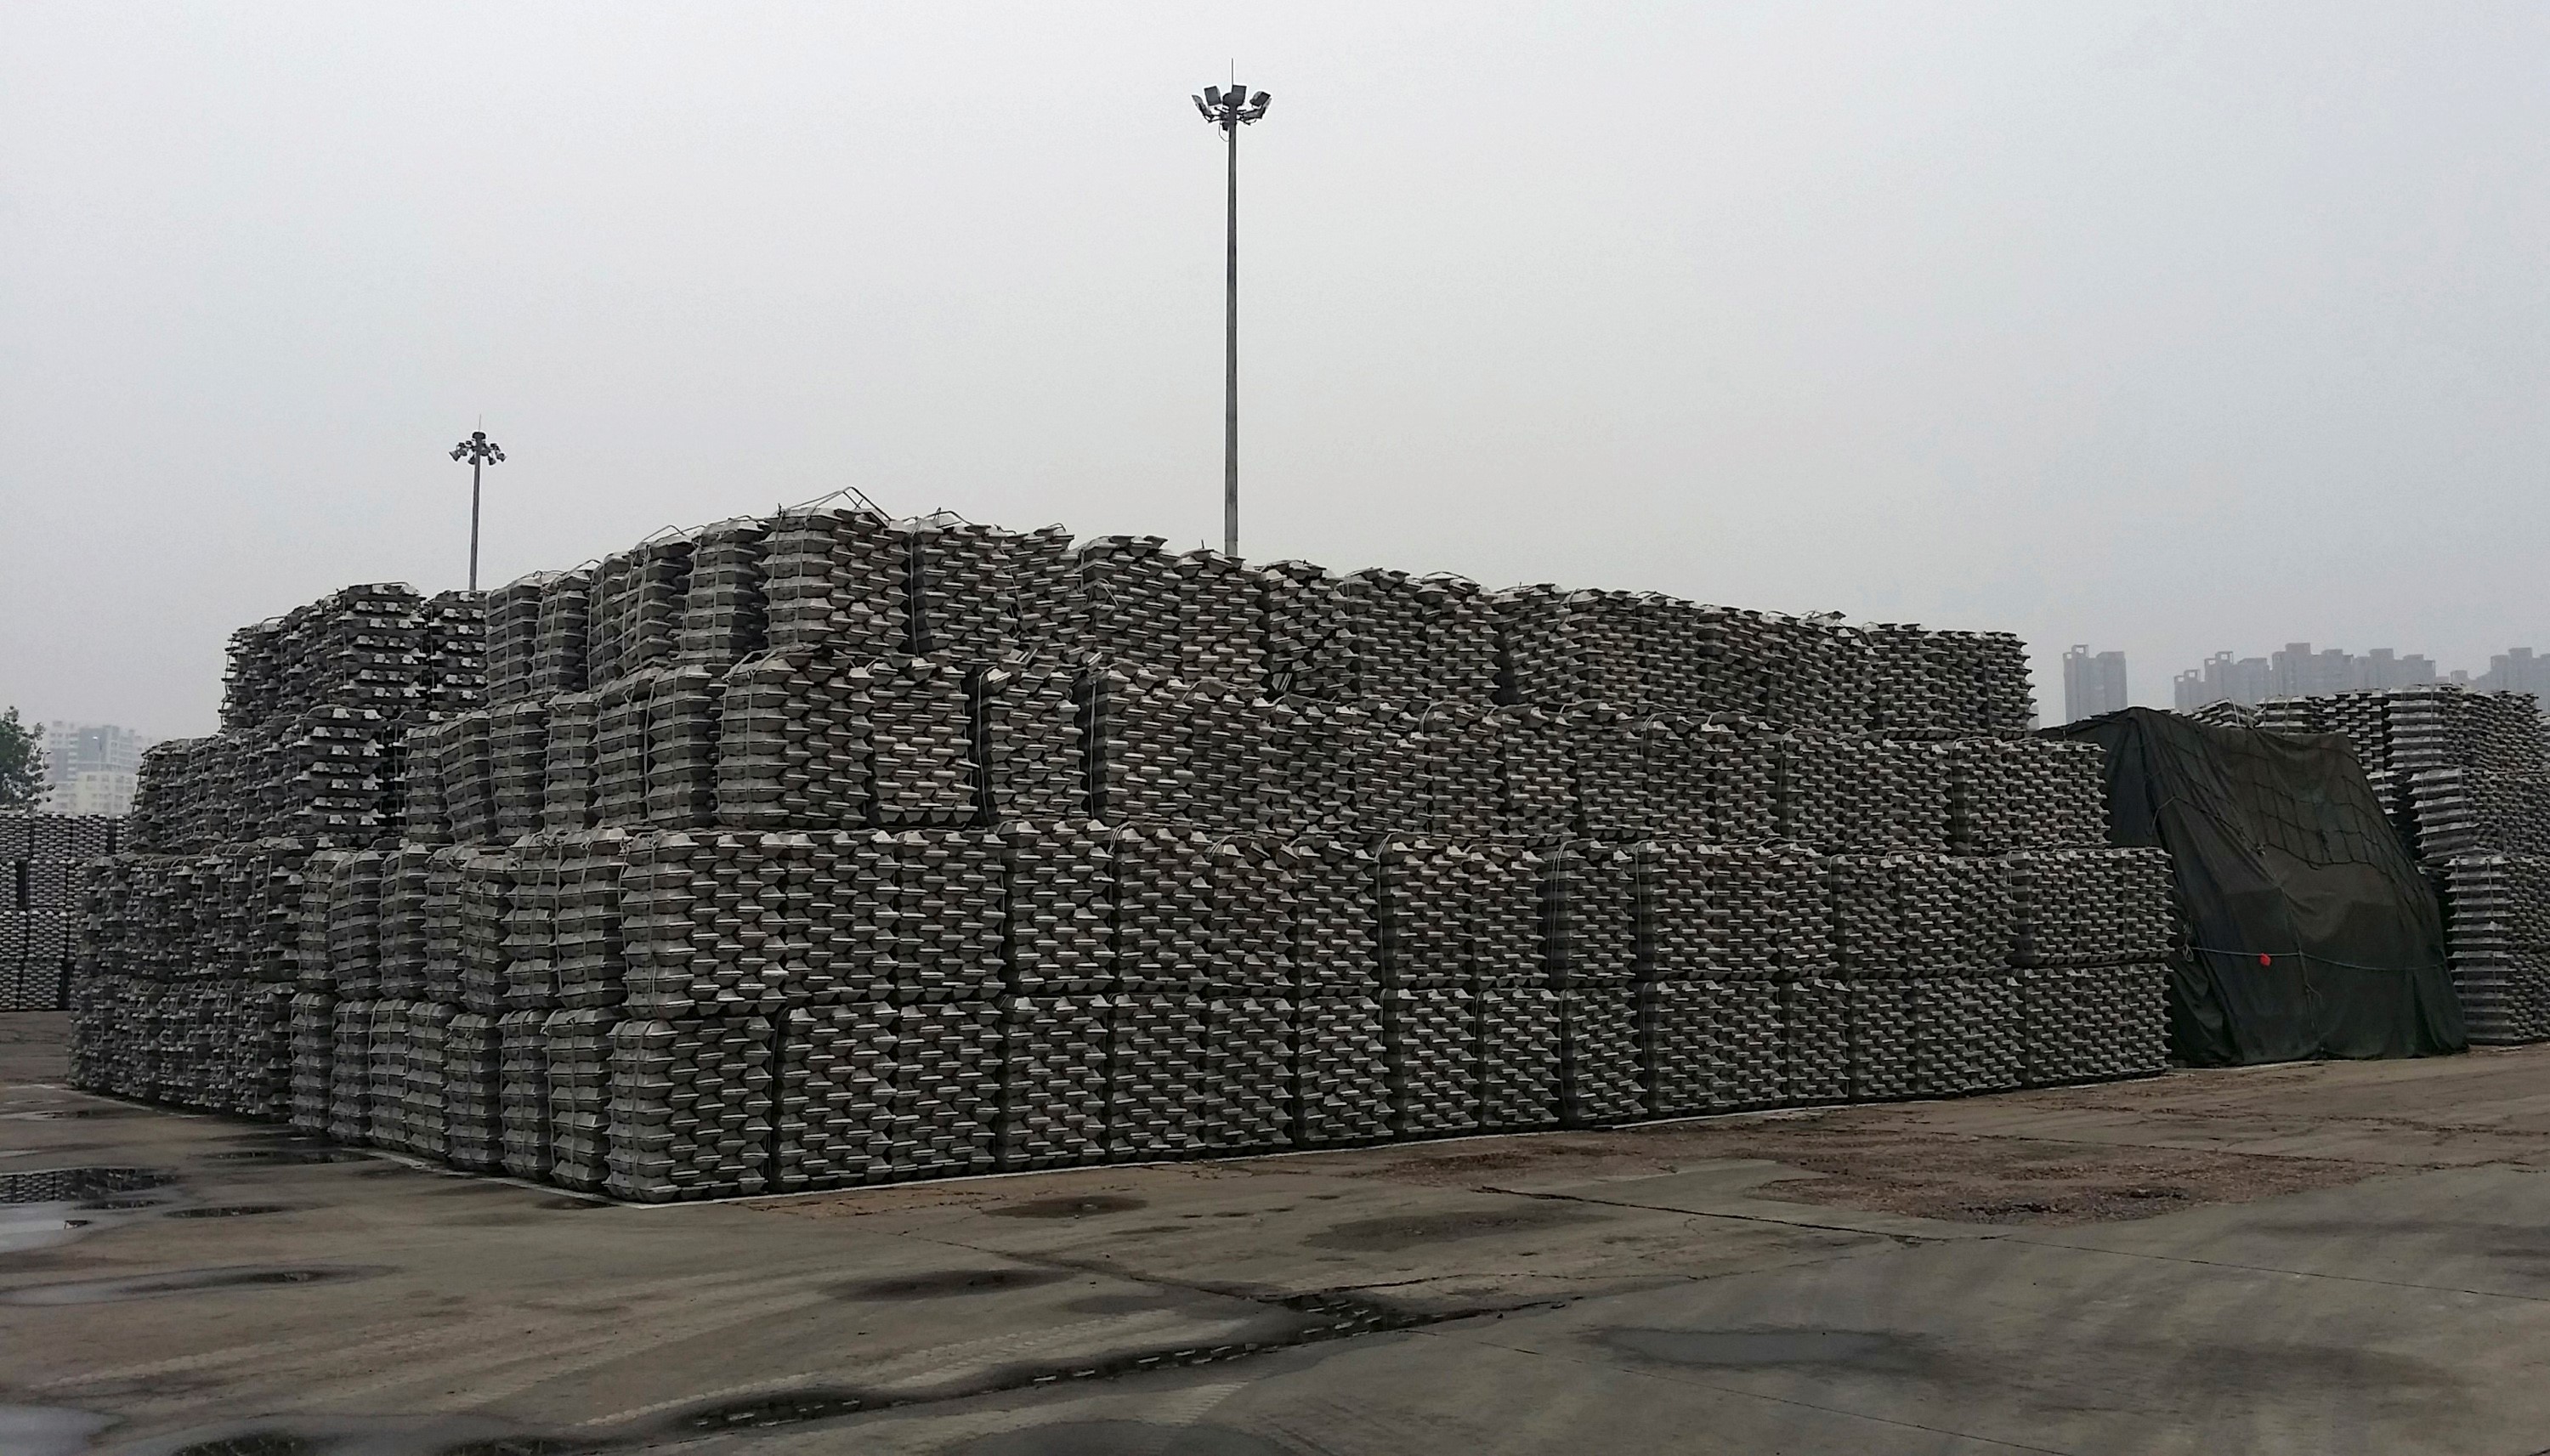 SMM A00铝锭价格下跌10元/吨;中国氧化铝现货价格上涨3元/吨